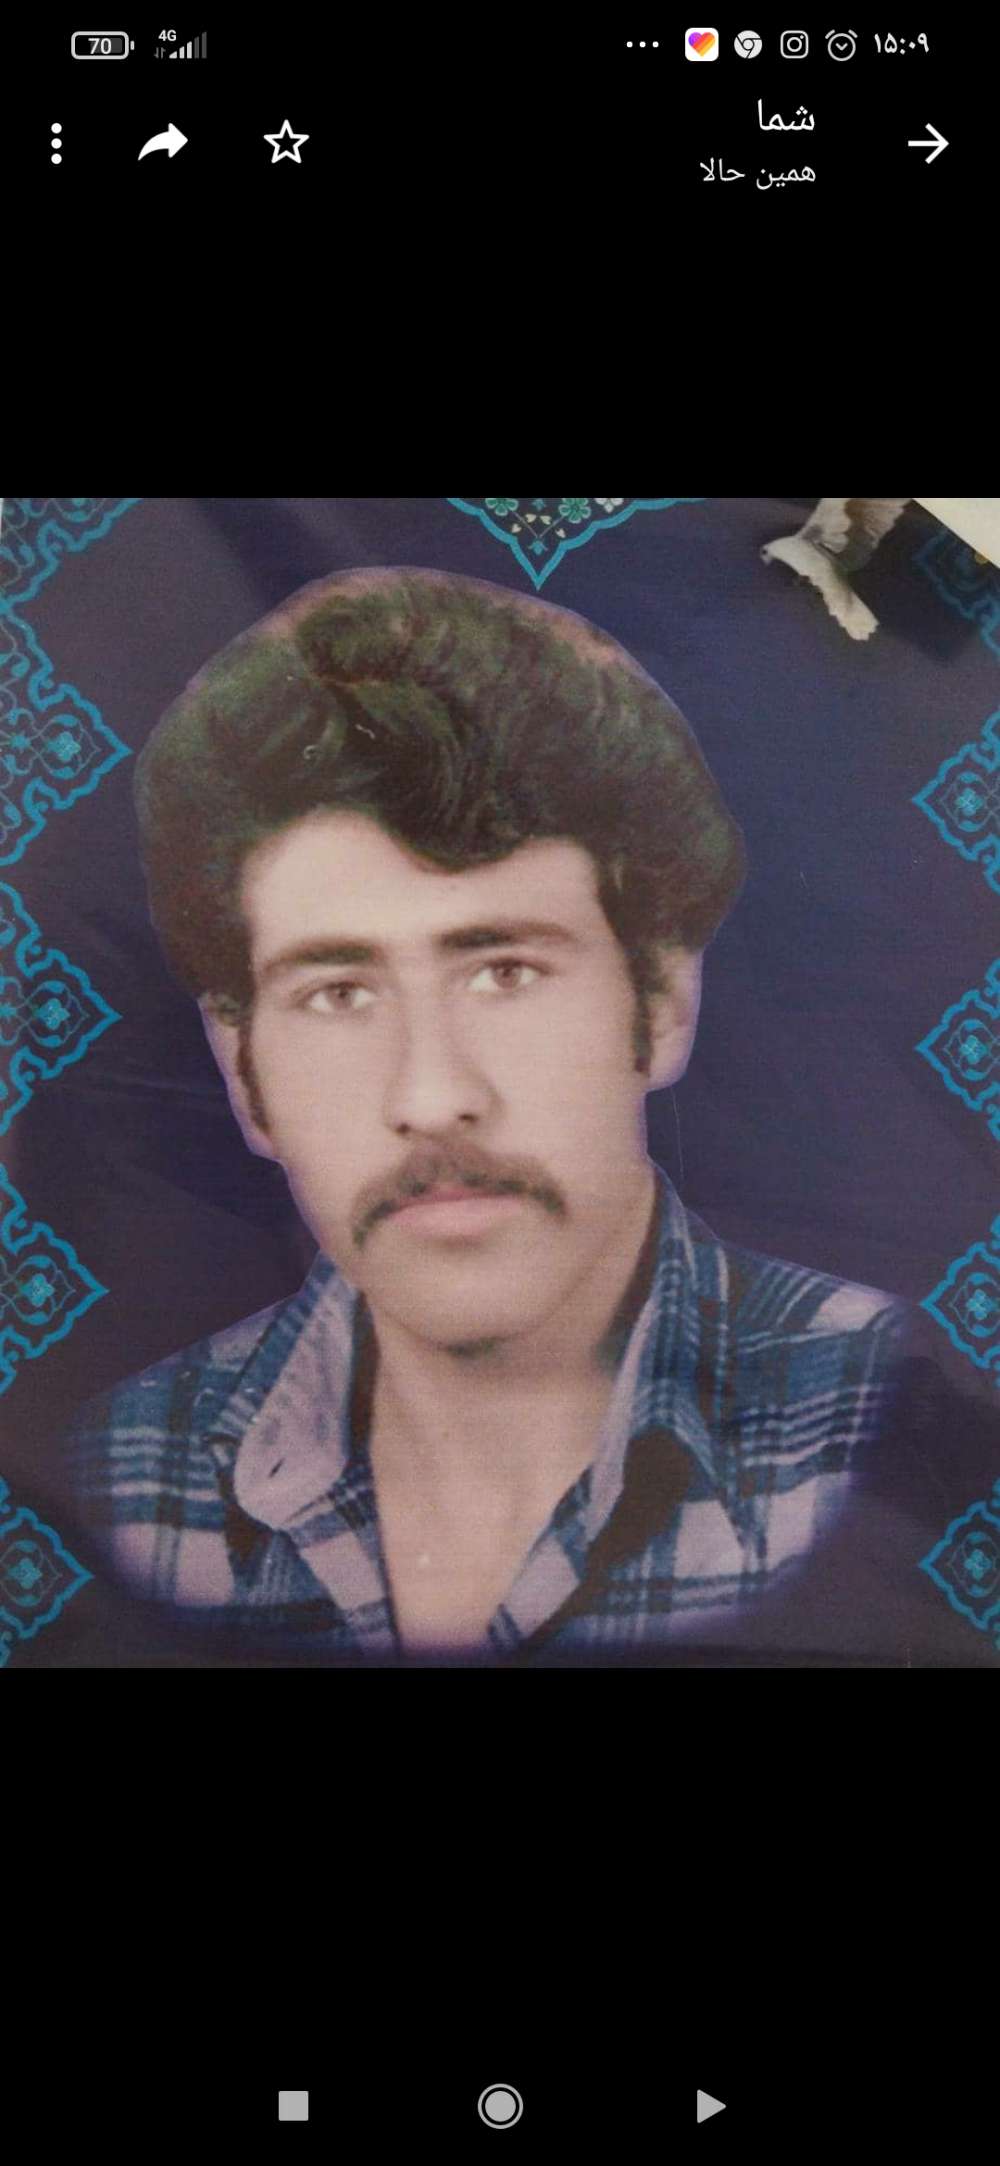 زنده یاد بهمن شاهسونی